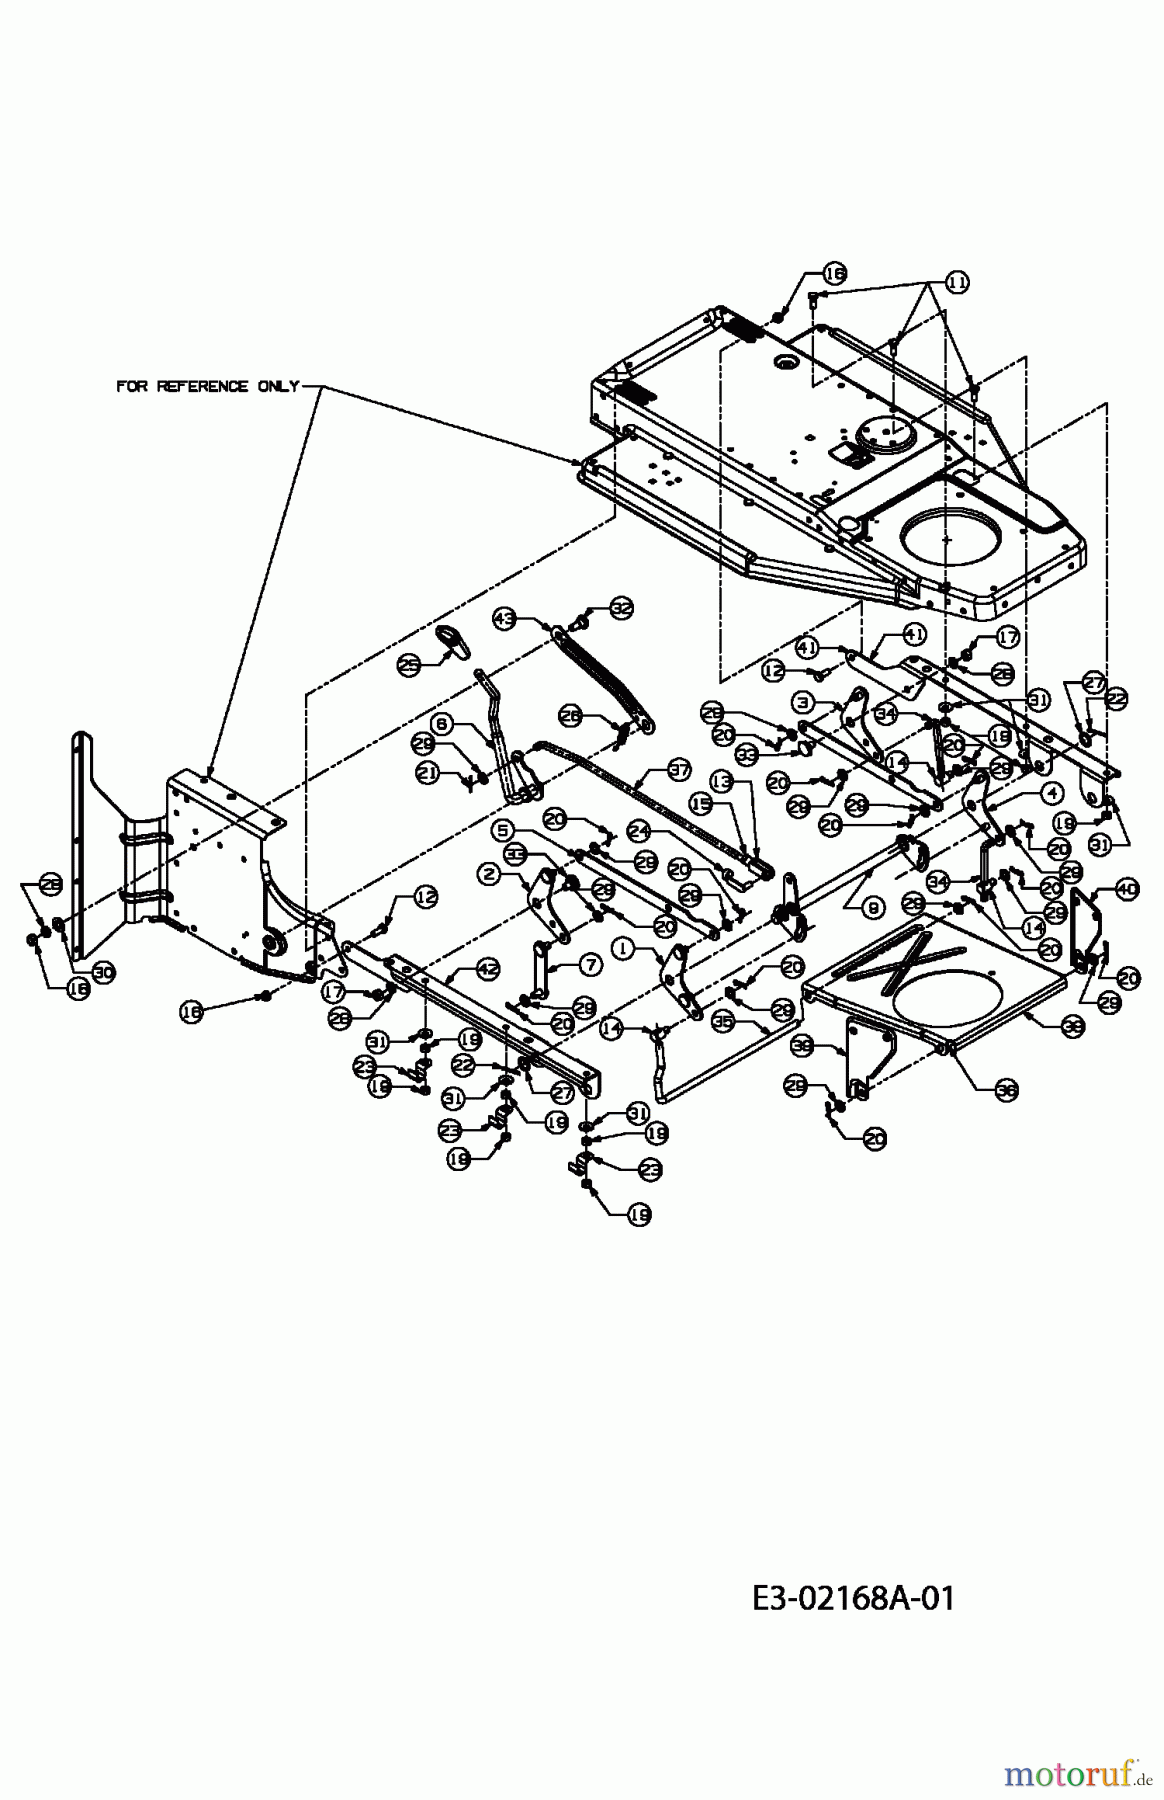  MTD Rasentraktoren RH 155/92 T 13D3452E600  (2004) Mähwerksaushebung